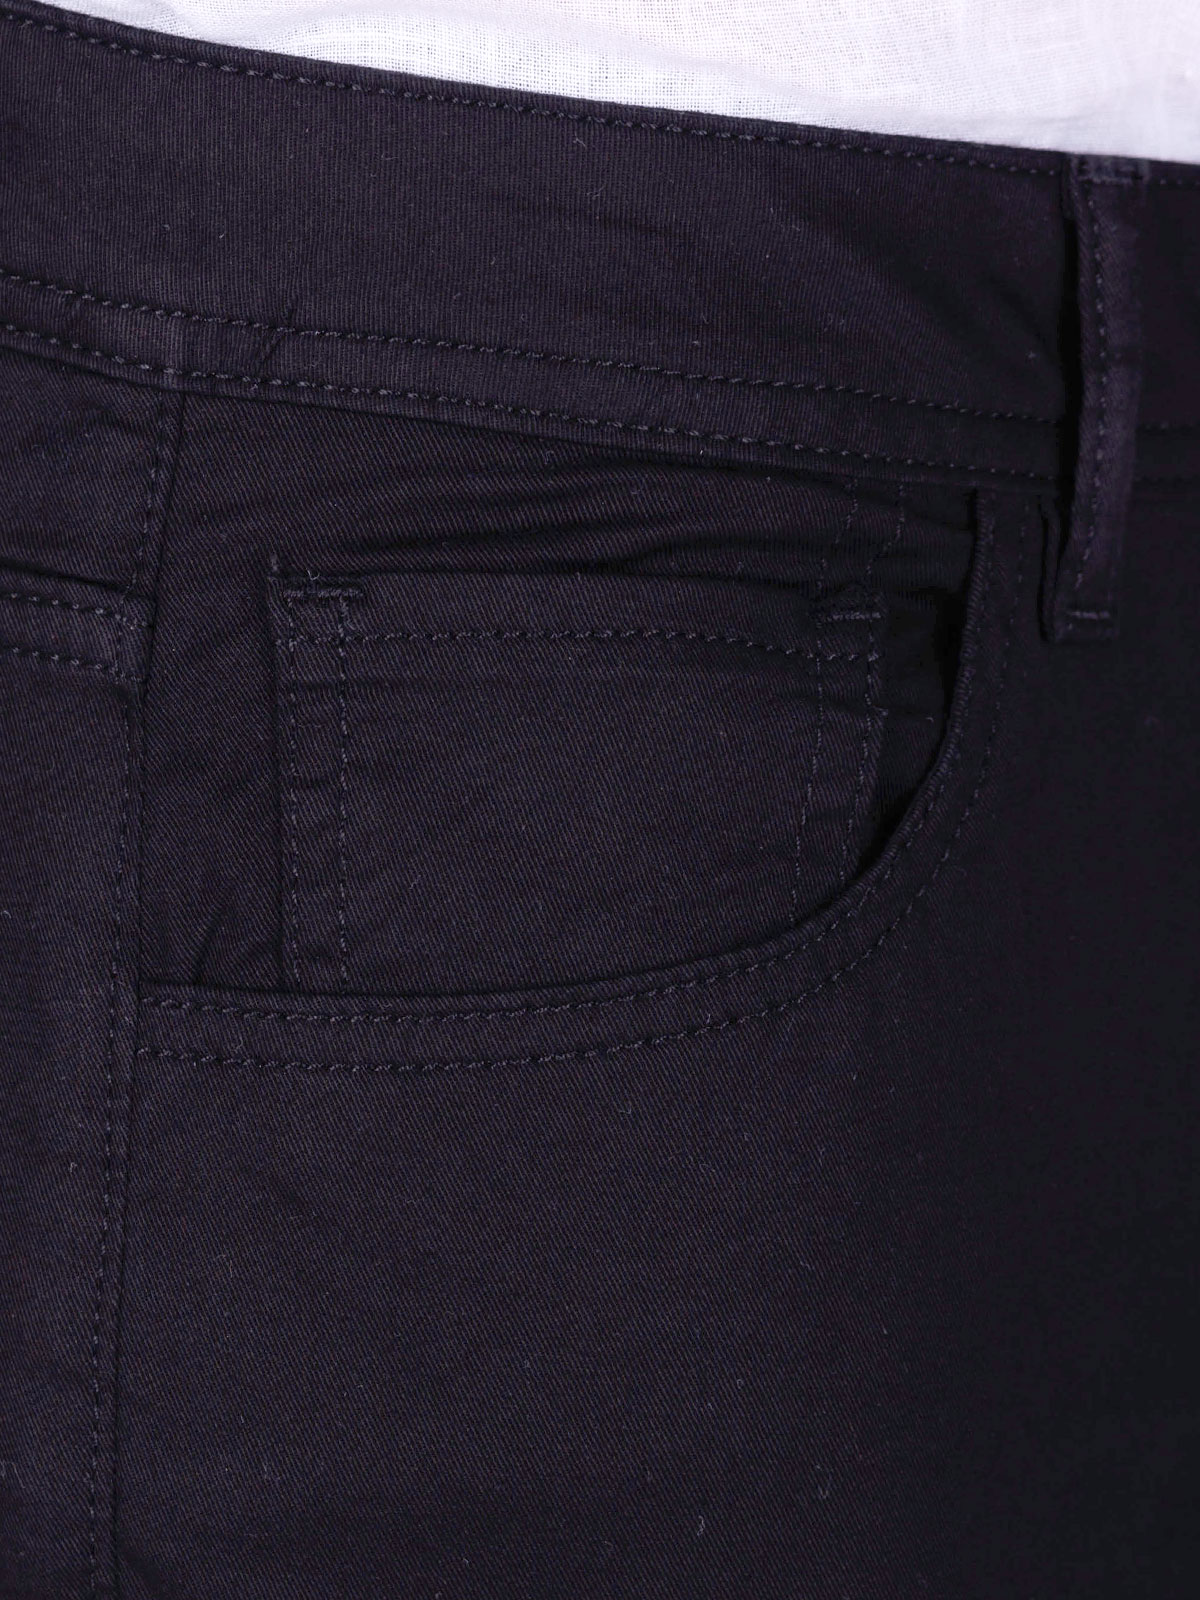 Παντελόνι σε μαύρο χρώμα με πέντε τσέπες - 60300 € 66.37 img2